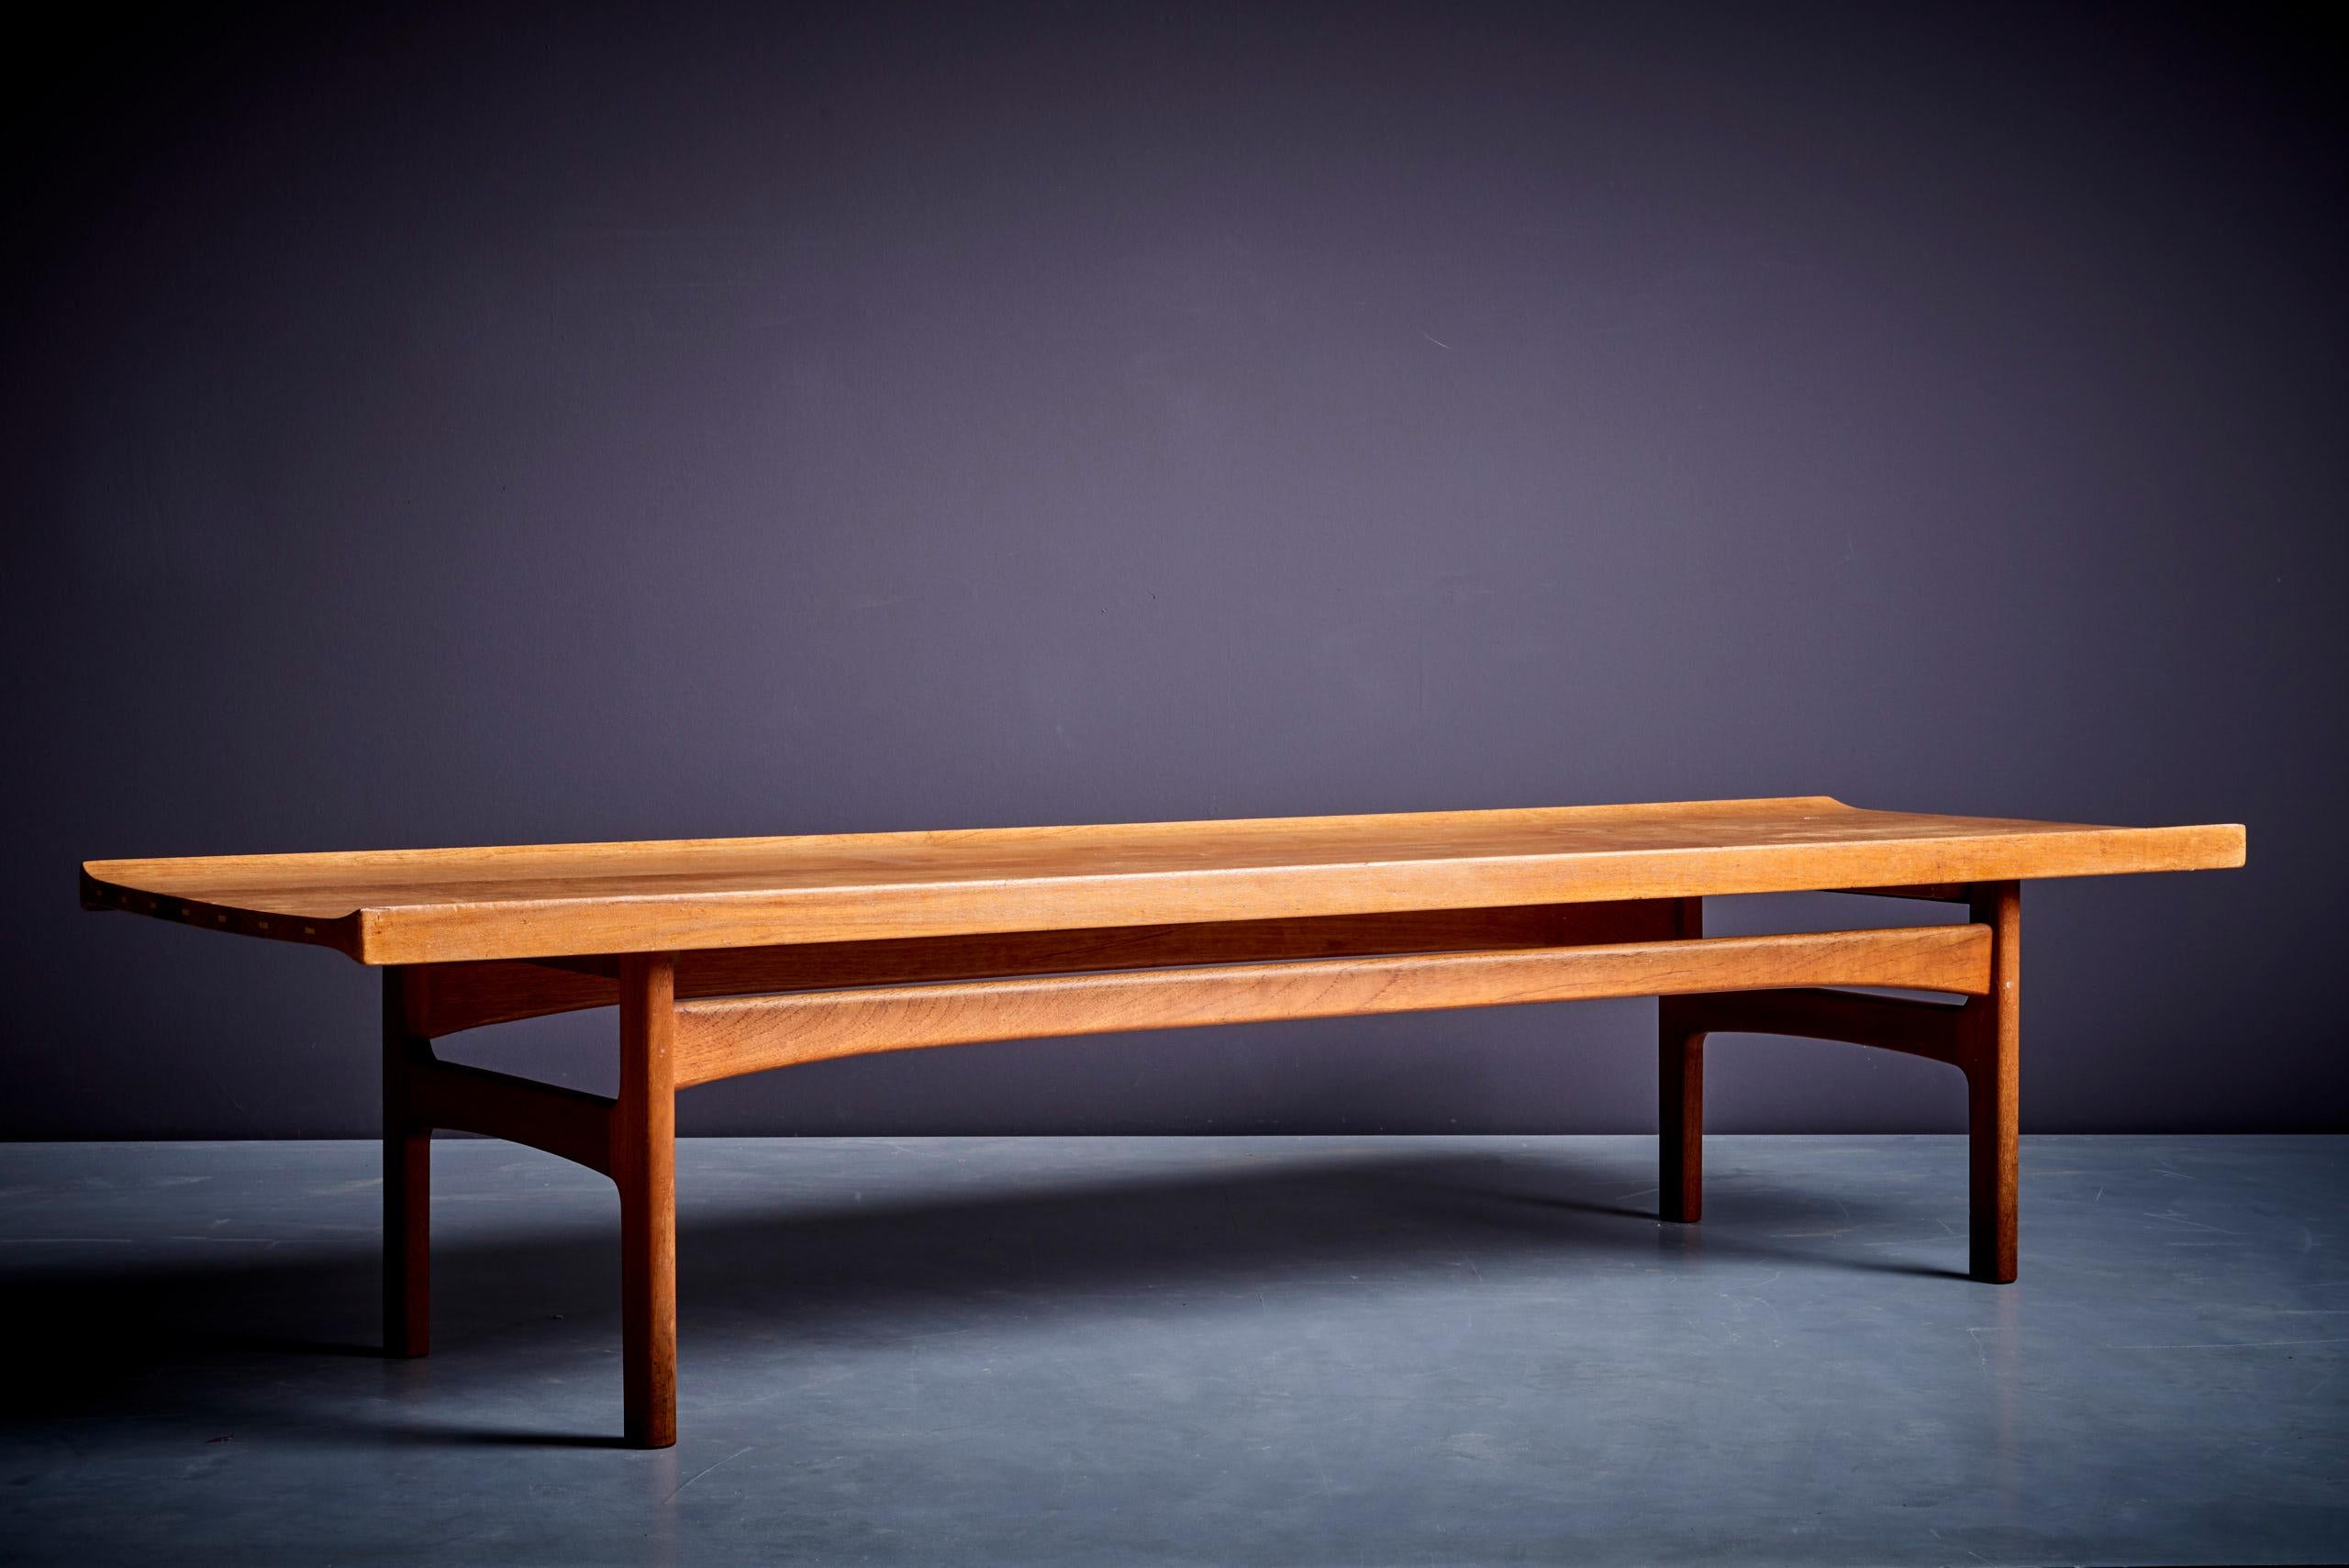 Tove & Edvard Kindt Larsen teak coffee table for France & Son, Denmark - 1950s.